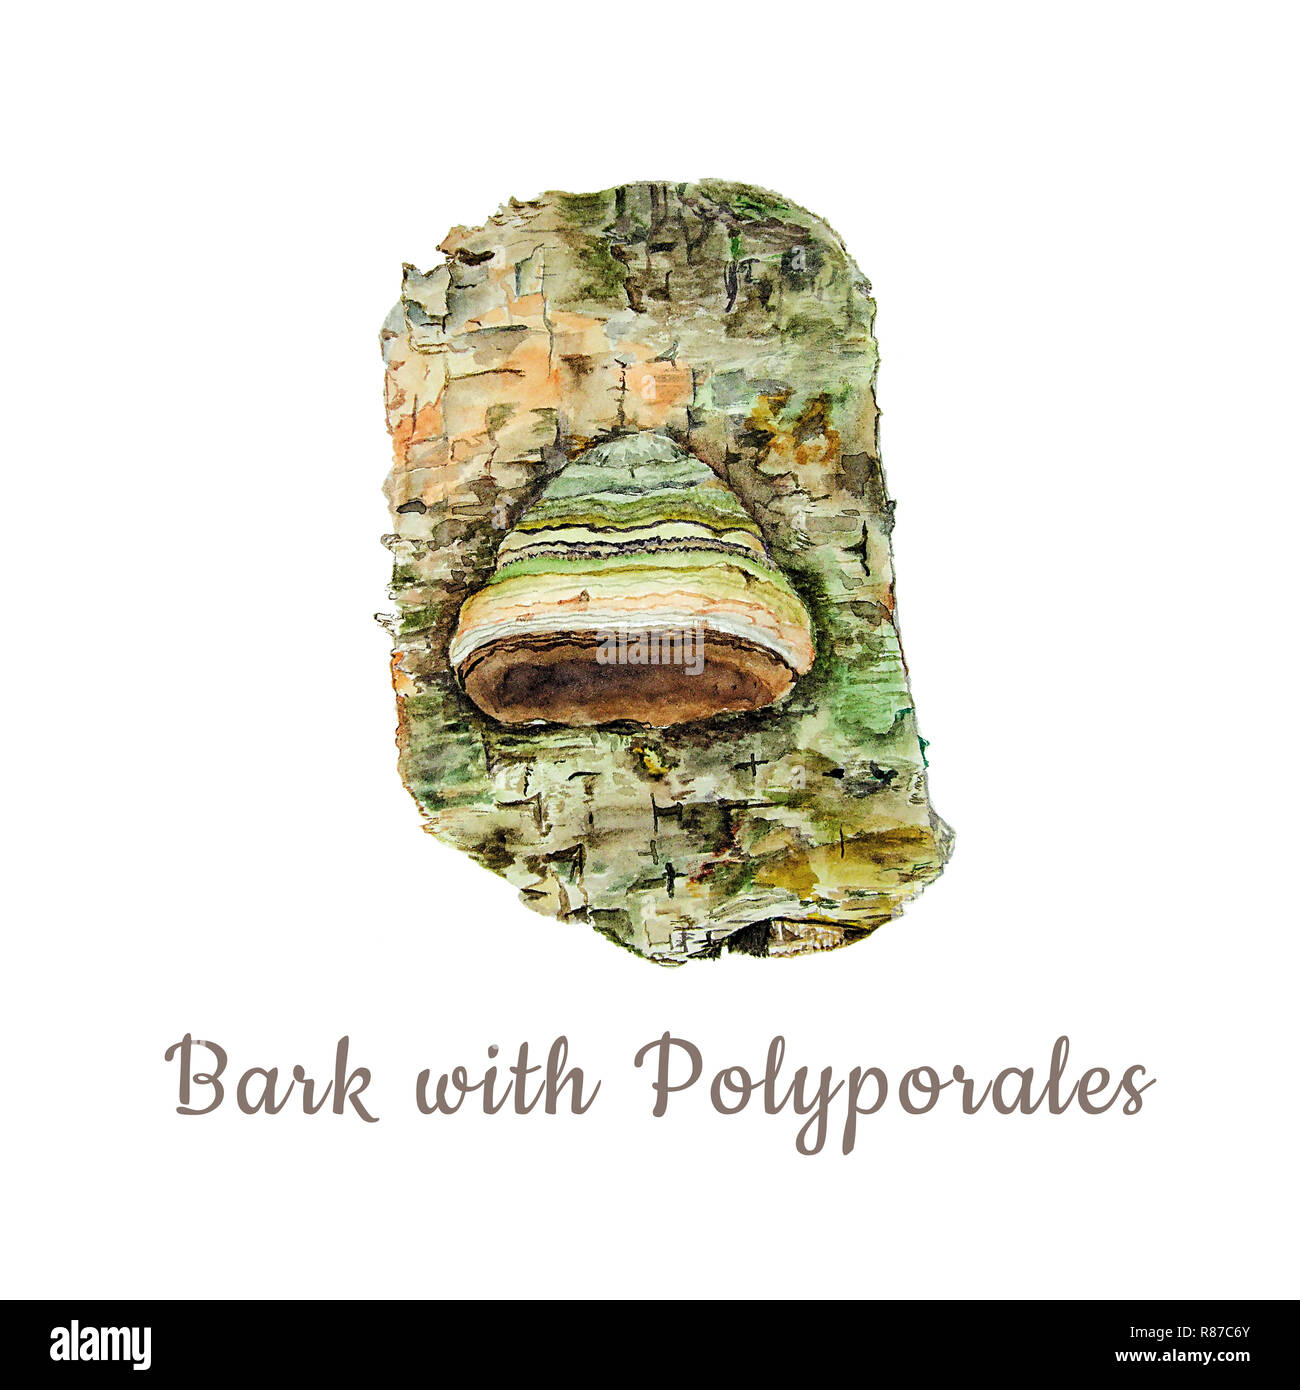 Botanische aquarell Abbildung: Rinde und Pilz polyporales auf weißem Hintergrund. Könnte als Dekoration für Web Design, polygraphie oder Text verwendet werden. Stockfoto